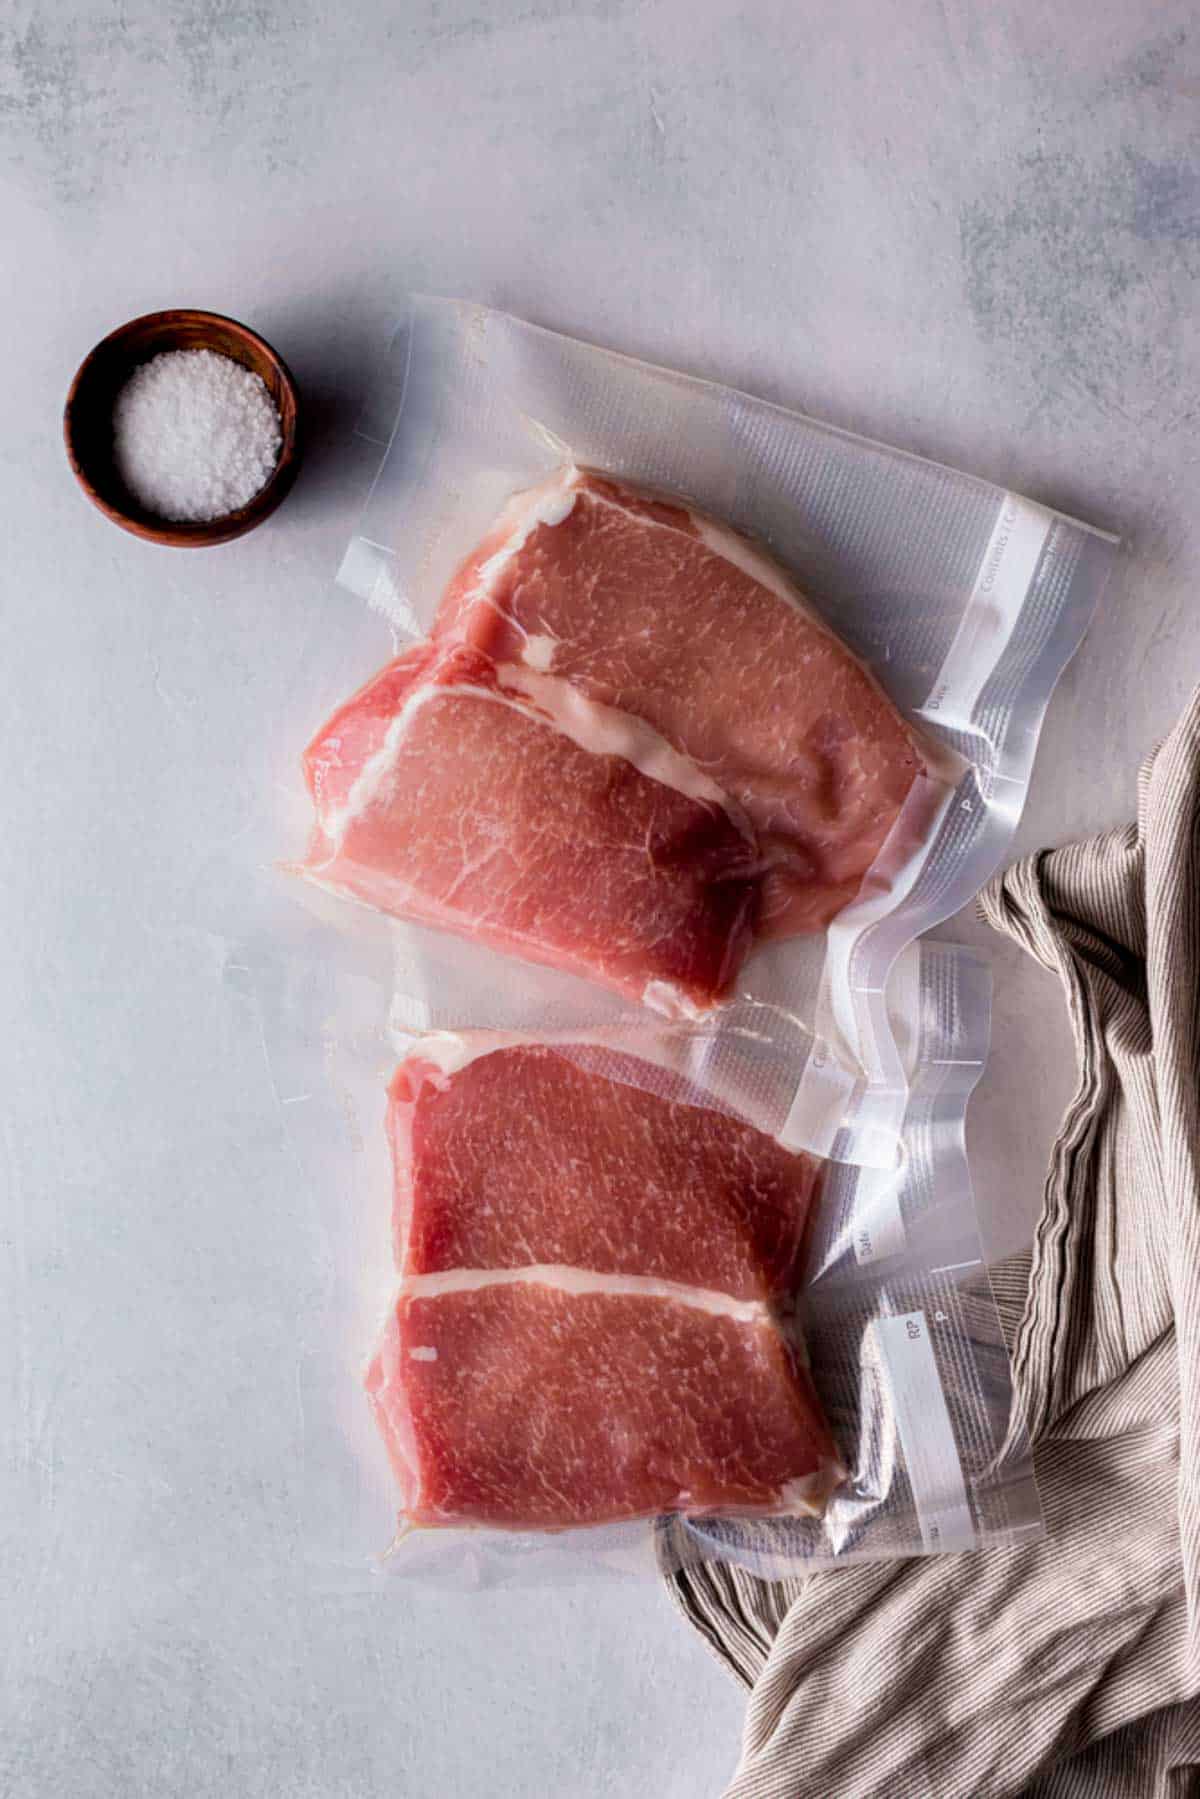 raw pork chops in vacuum seal bags